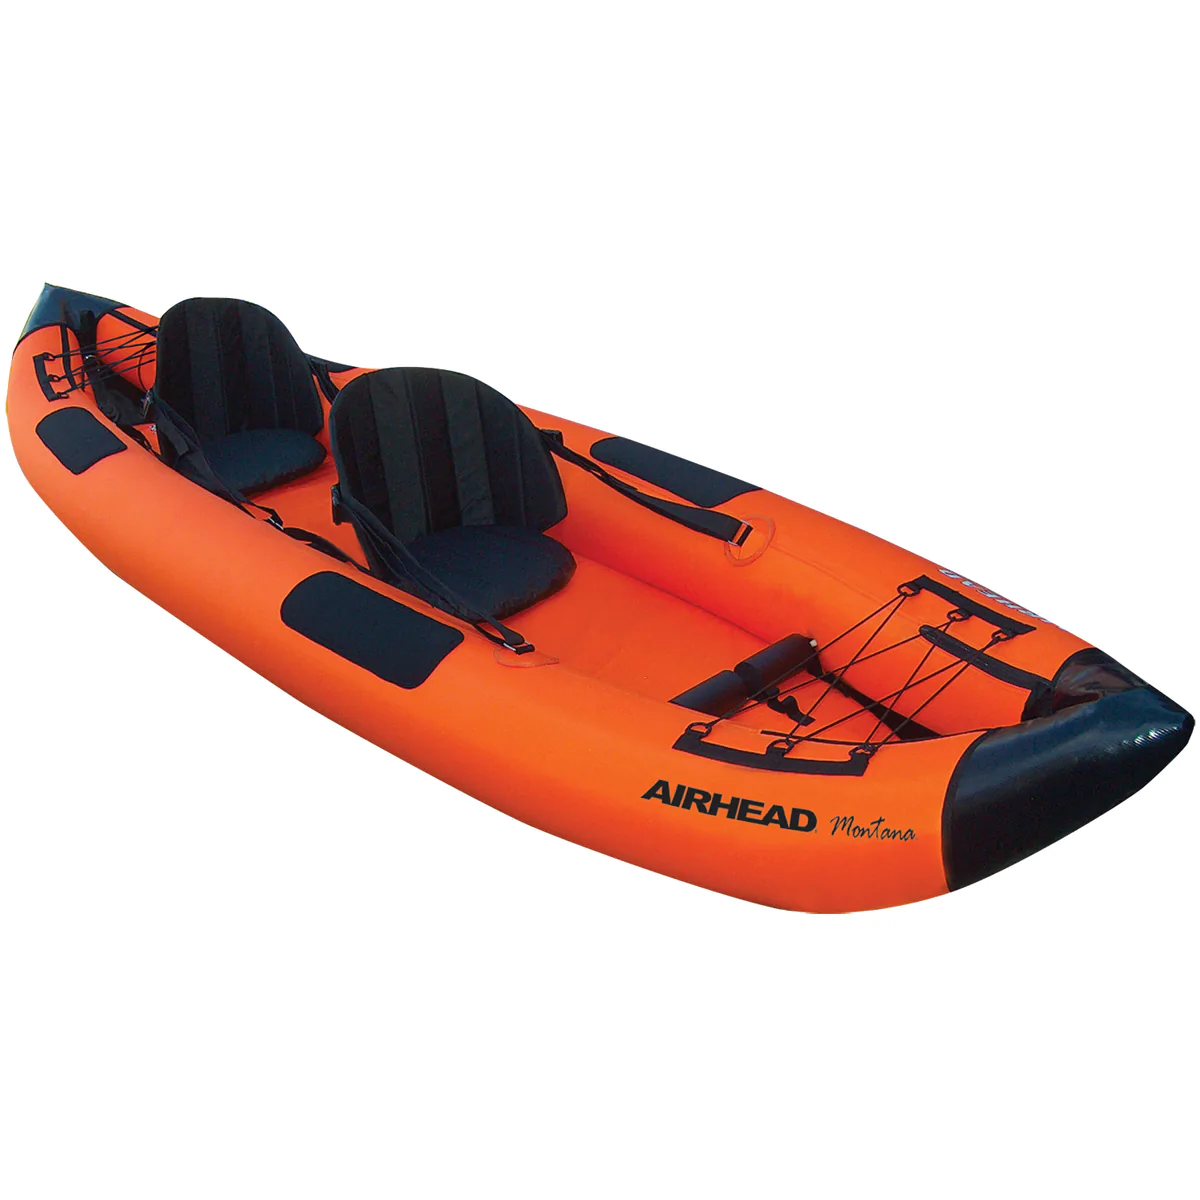 Apa Saja Spesifikasi Yang Ada Di Dalam Kayak Mancing Murah Paddle LSF Quest Pro Angler 10 Itu?